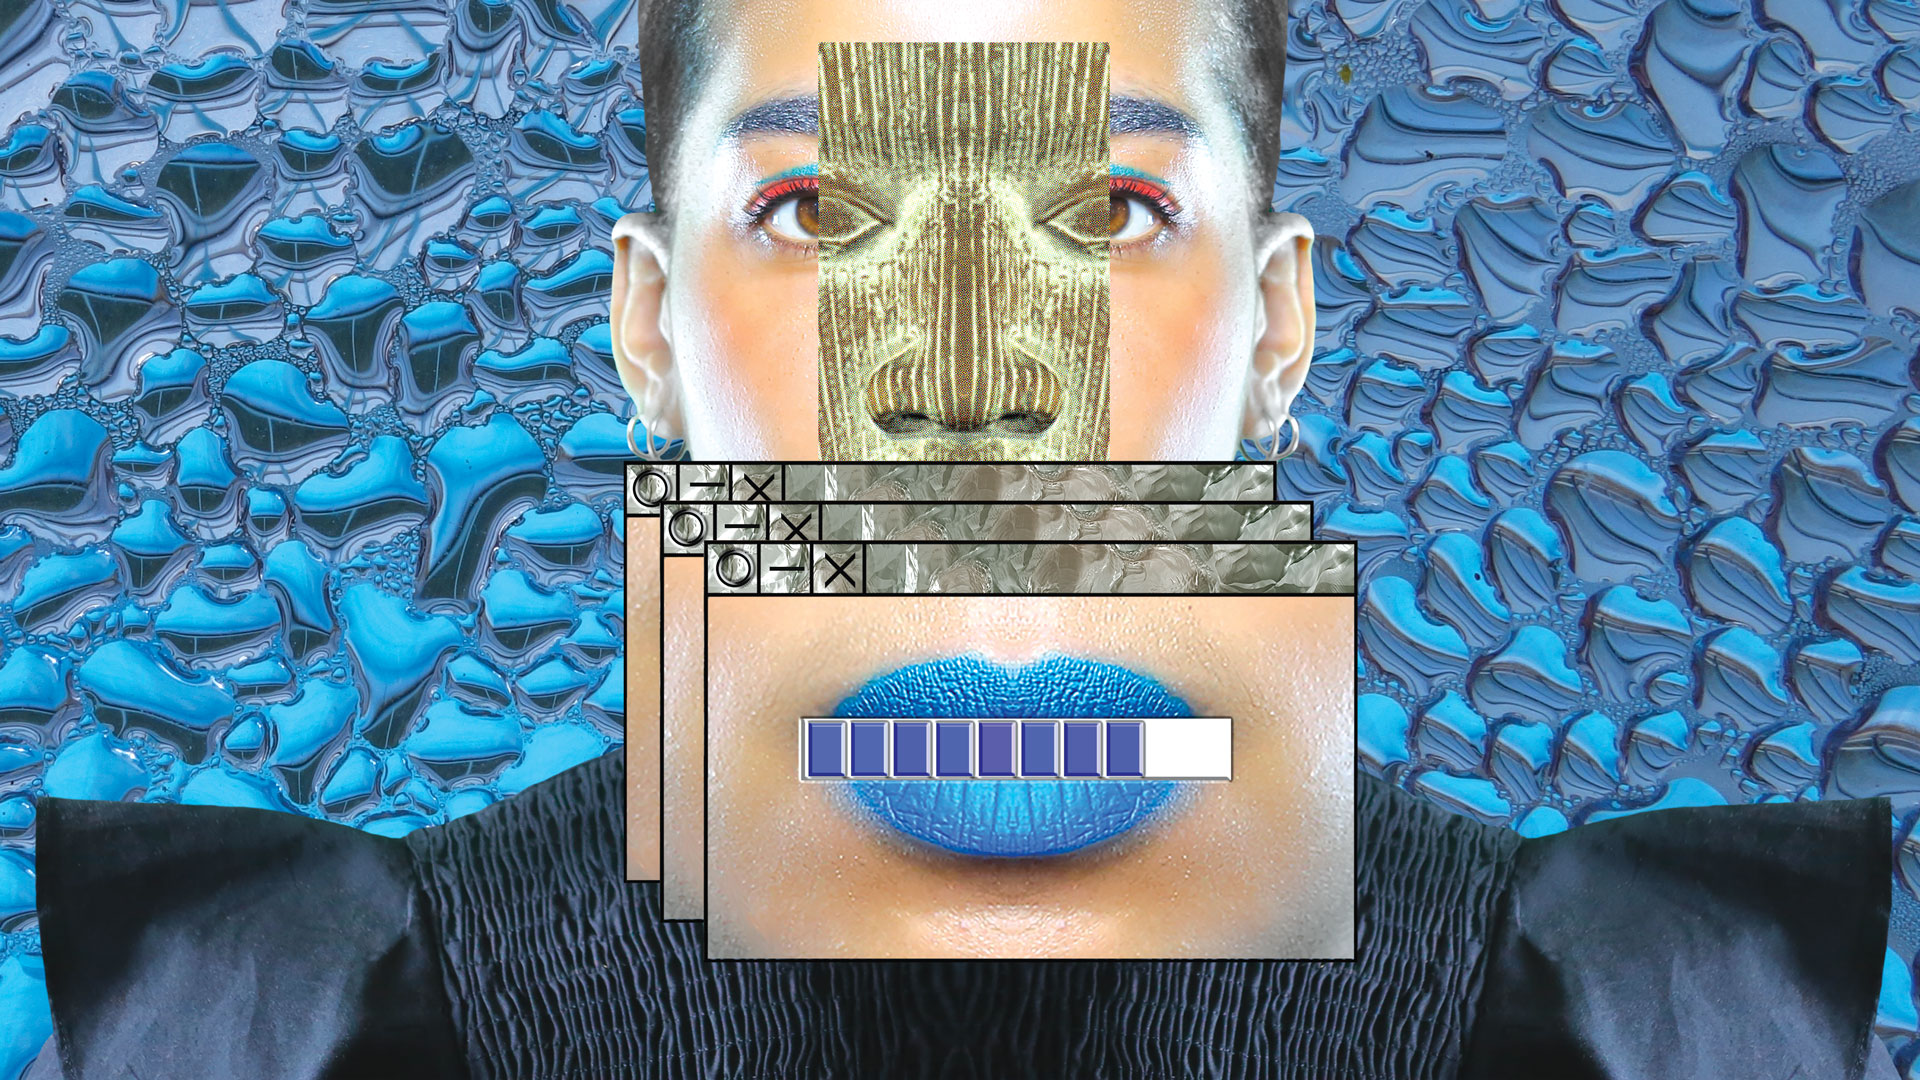 Visuel d'illustration de l'exposition " Josèfa Ntjam "